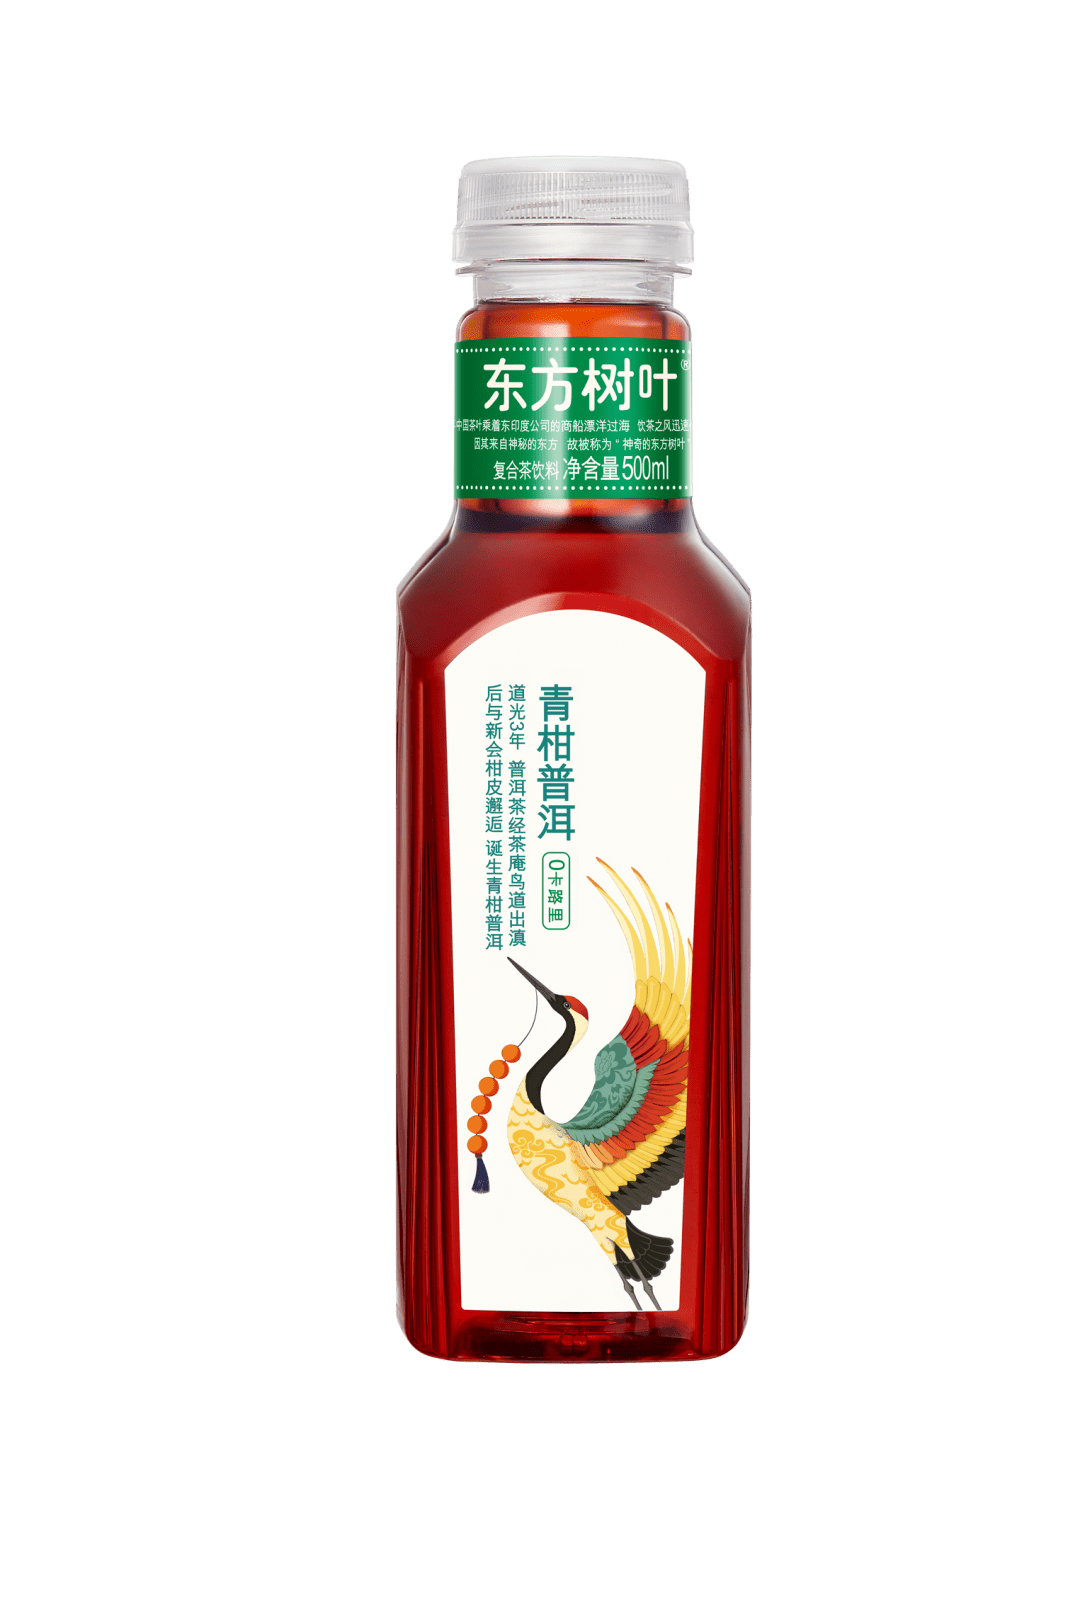 oriental-leaf-orange-peel-pu-er-tea-drink